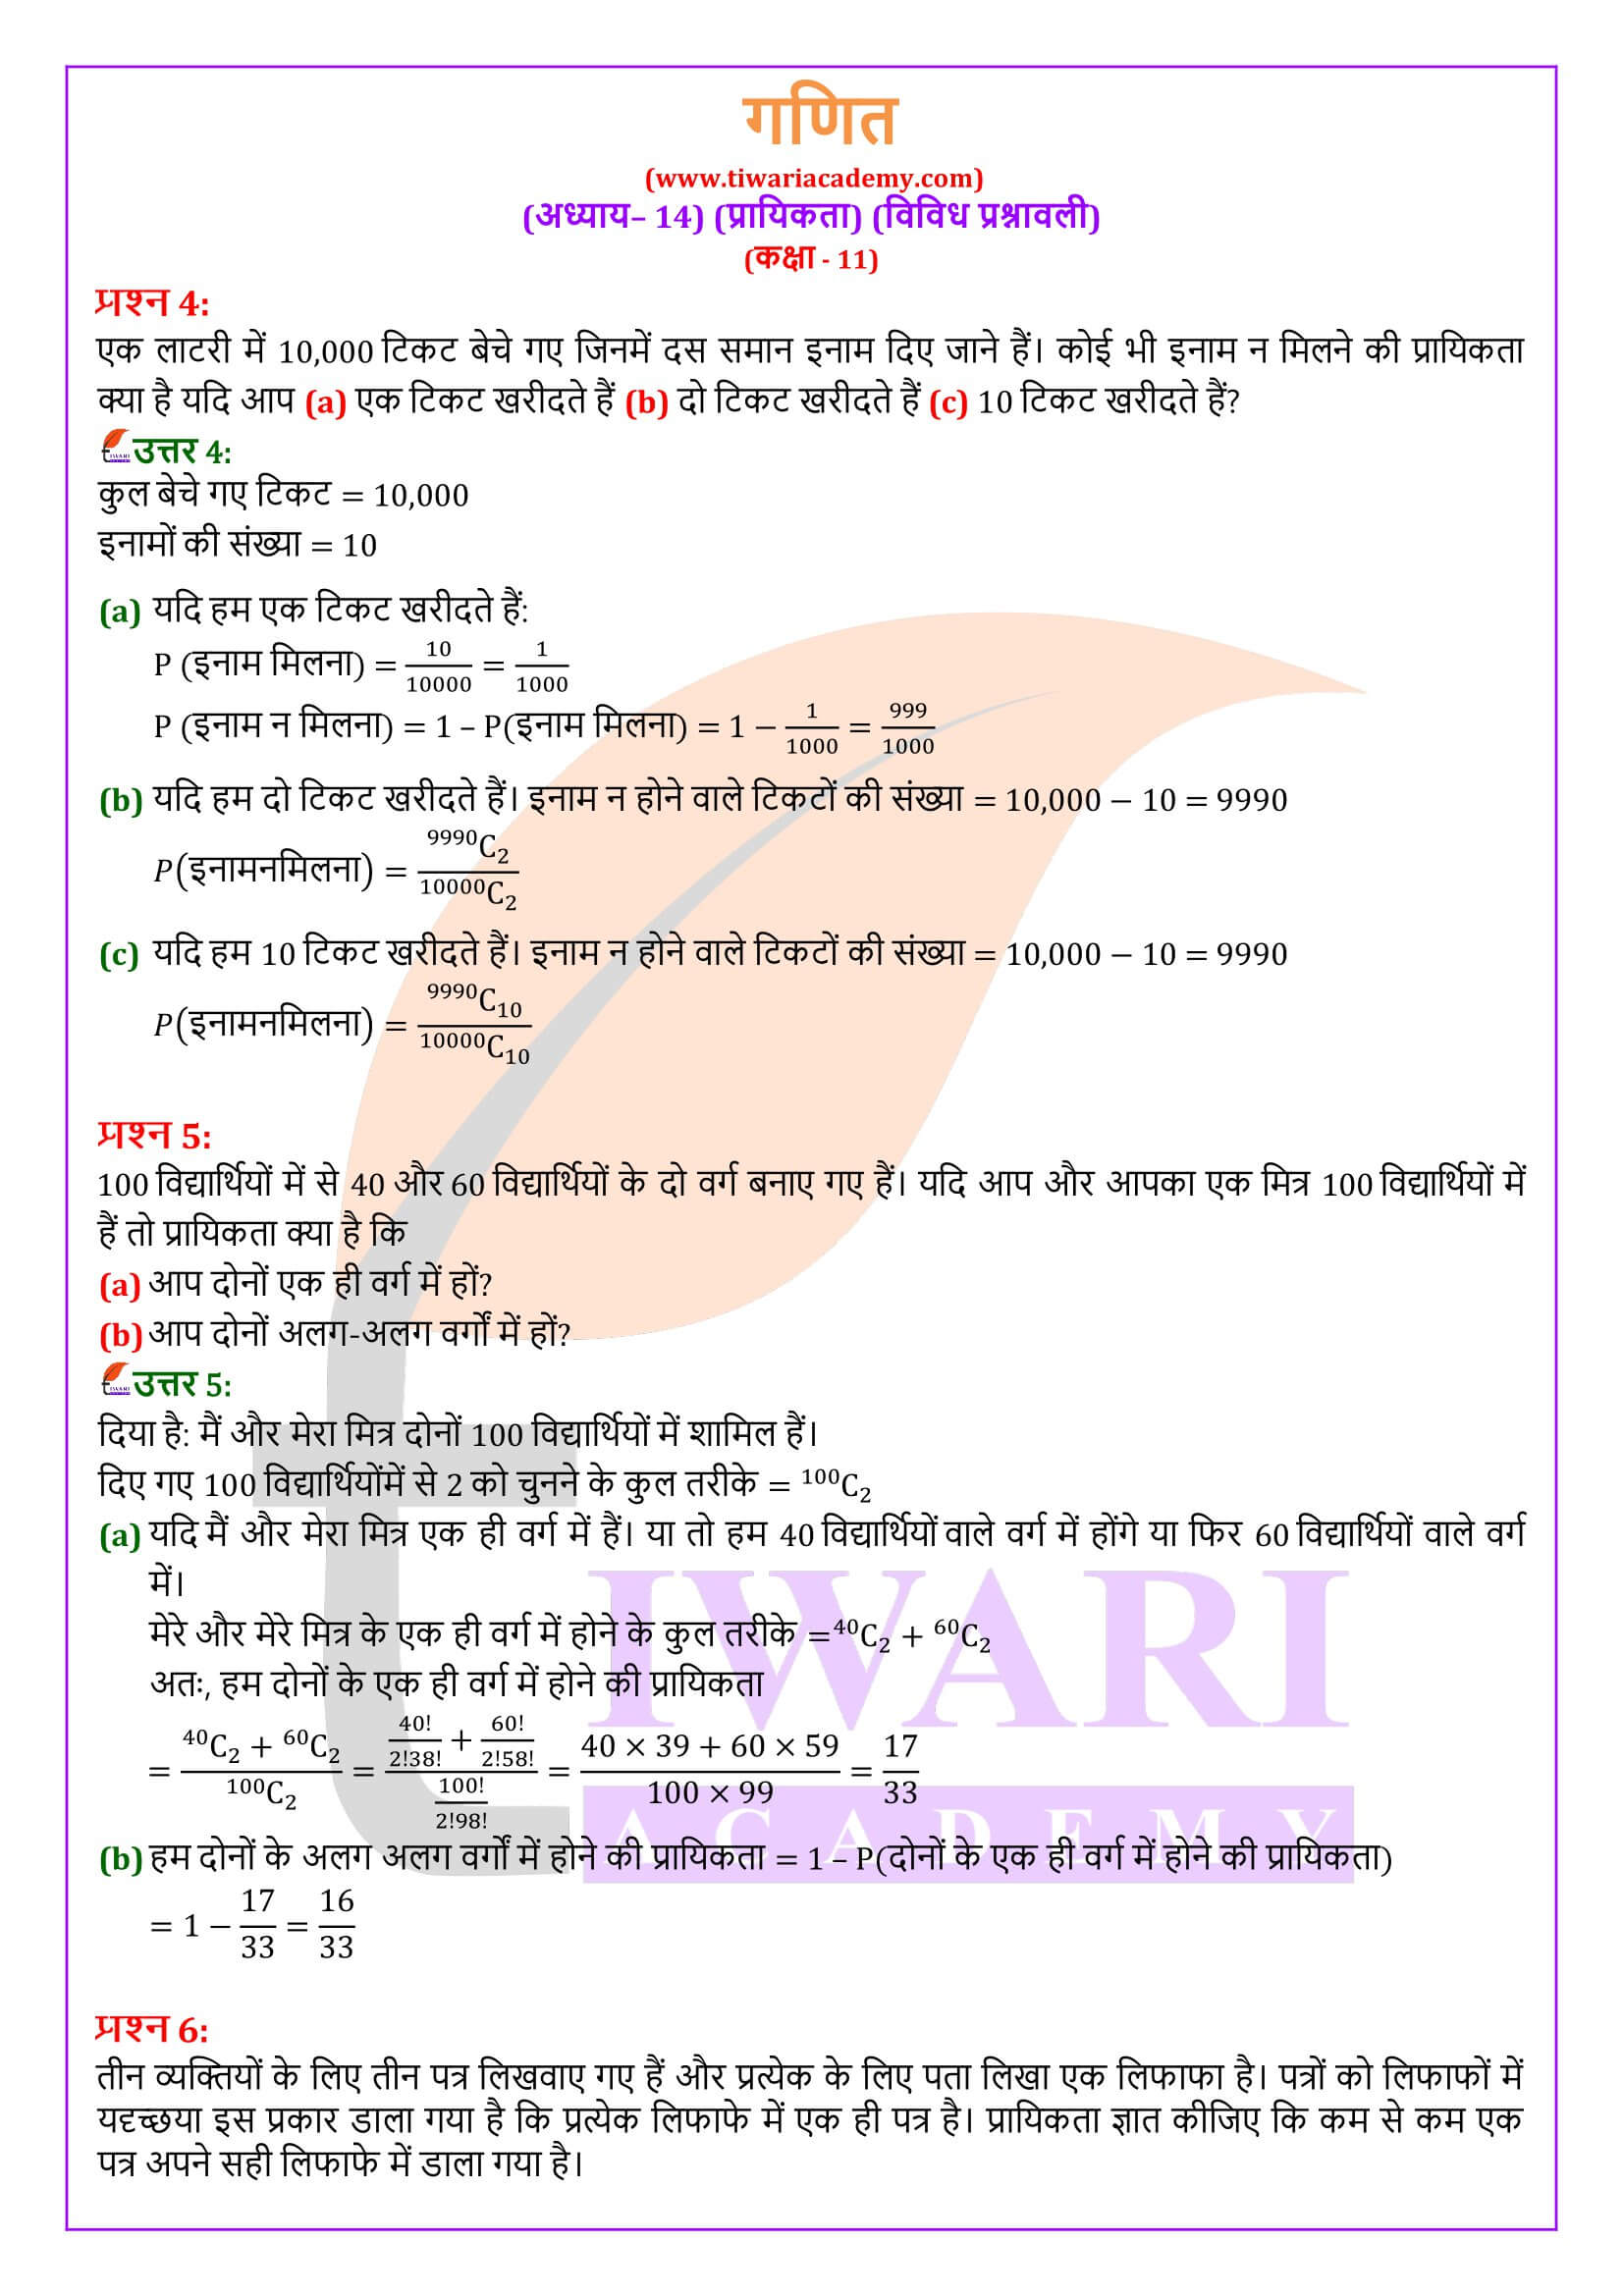 एनसीईआरटी समाधान कक्षा 11 गणित अध्याय 14 विविध प्रश्नावली हिंदी मीडियम